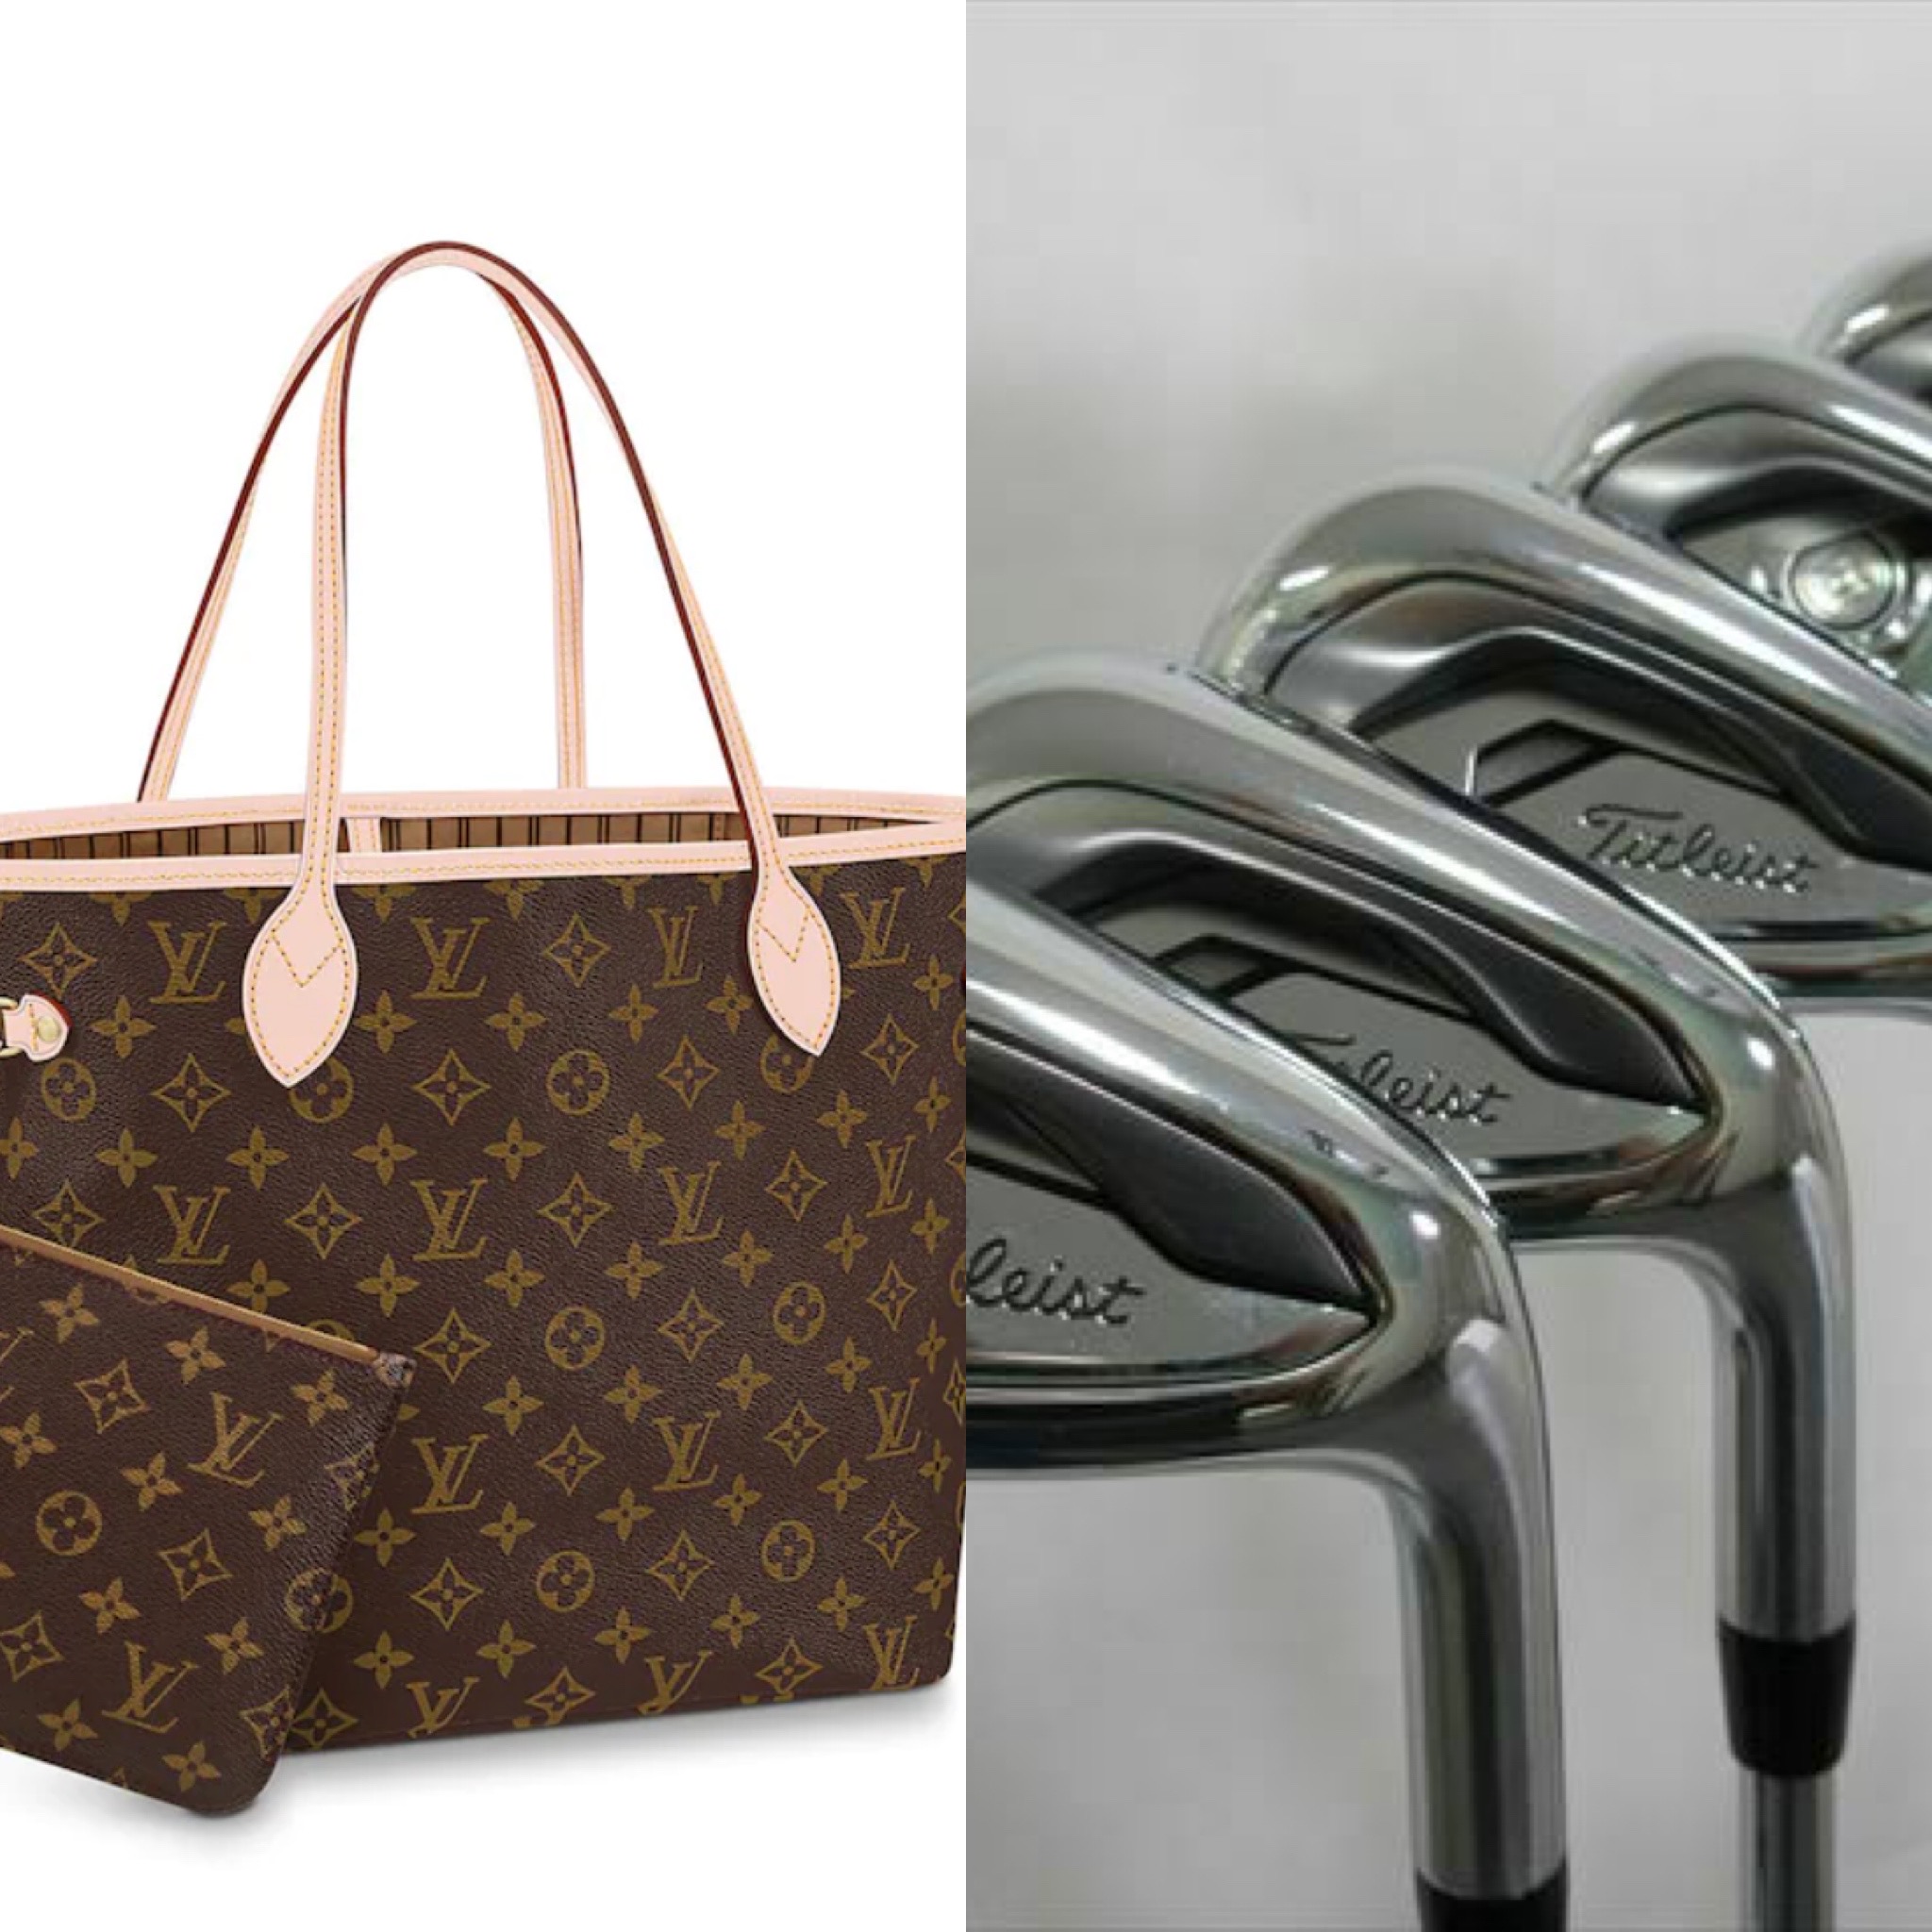 Luis Vuitton bag and Titleist golf clubs